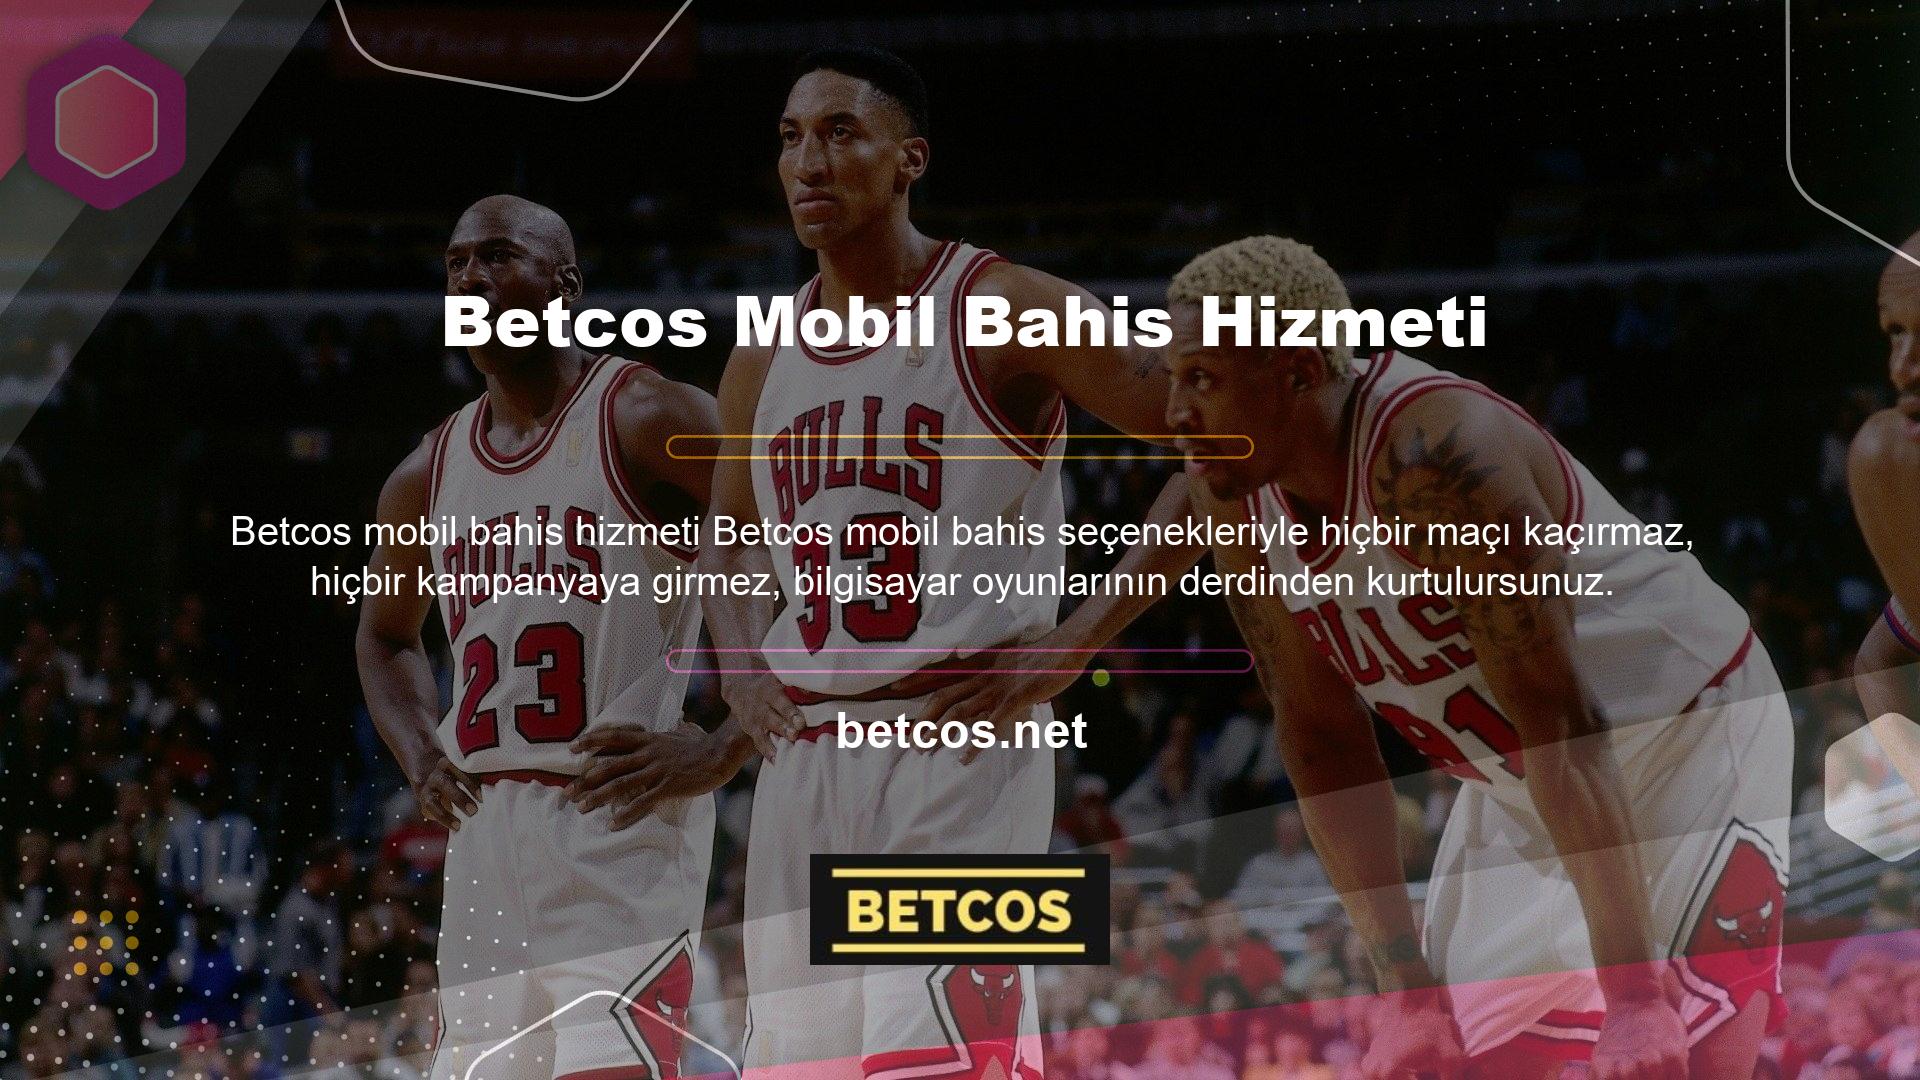 Betcos mobil bahis servis sağlayıcısı, casino kullanıcılar için daha çekici hale getirmeye kararlıdır ve teknoloji izleme yönetimi sayesinde üyelerine mobil hizmetler sunmaya karar vermiştir